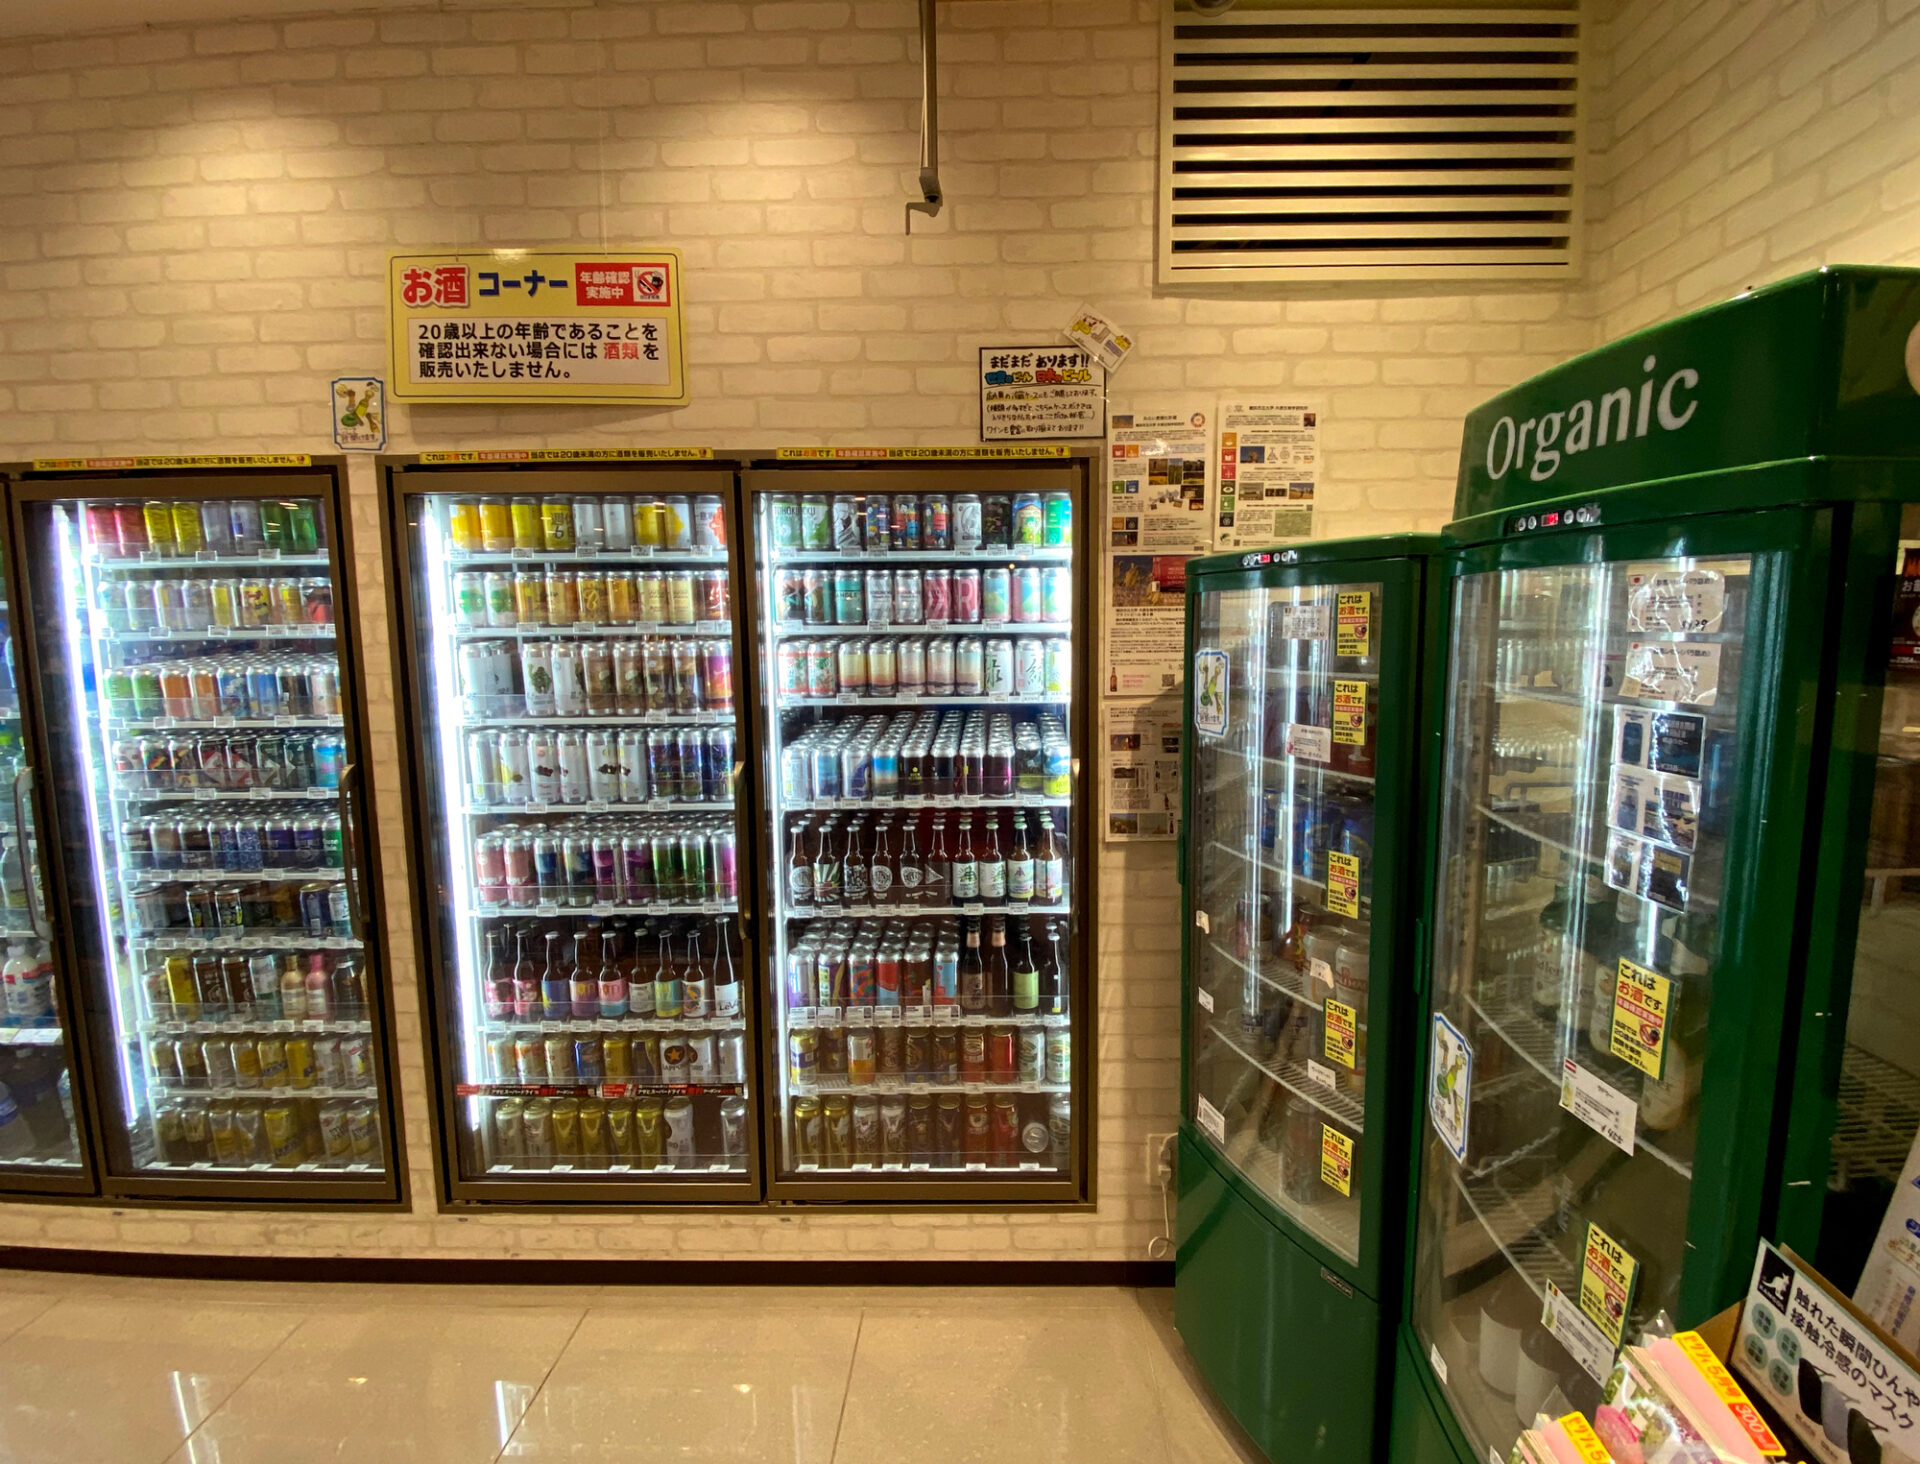 セブン-イレブン 横浜ハンマーヘッド店の店内。入って右手の冷蔵庫